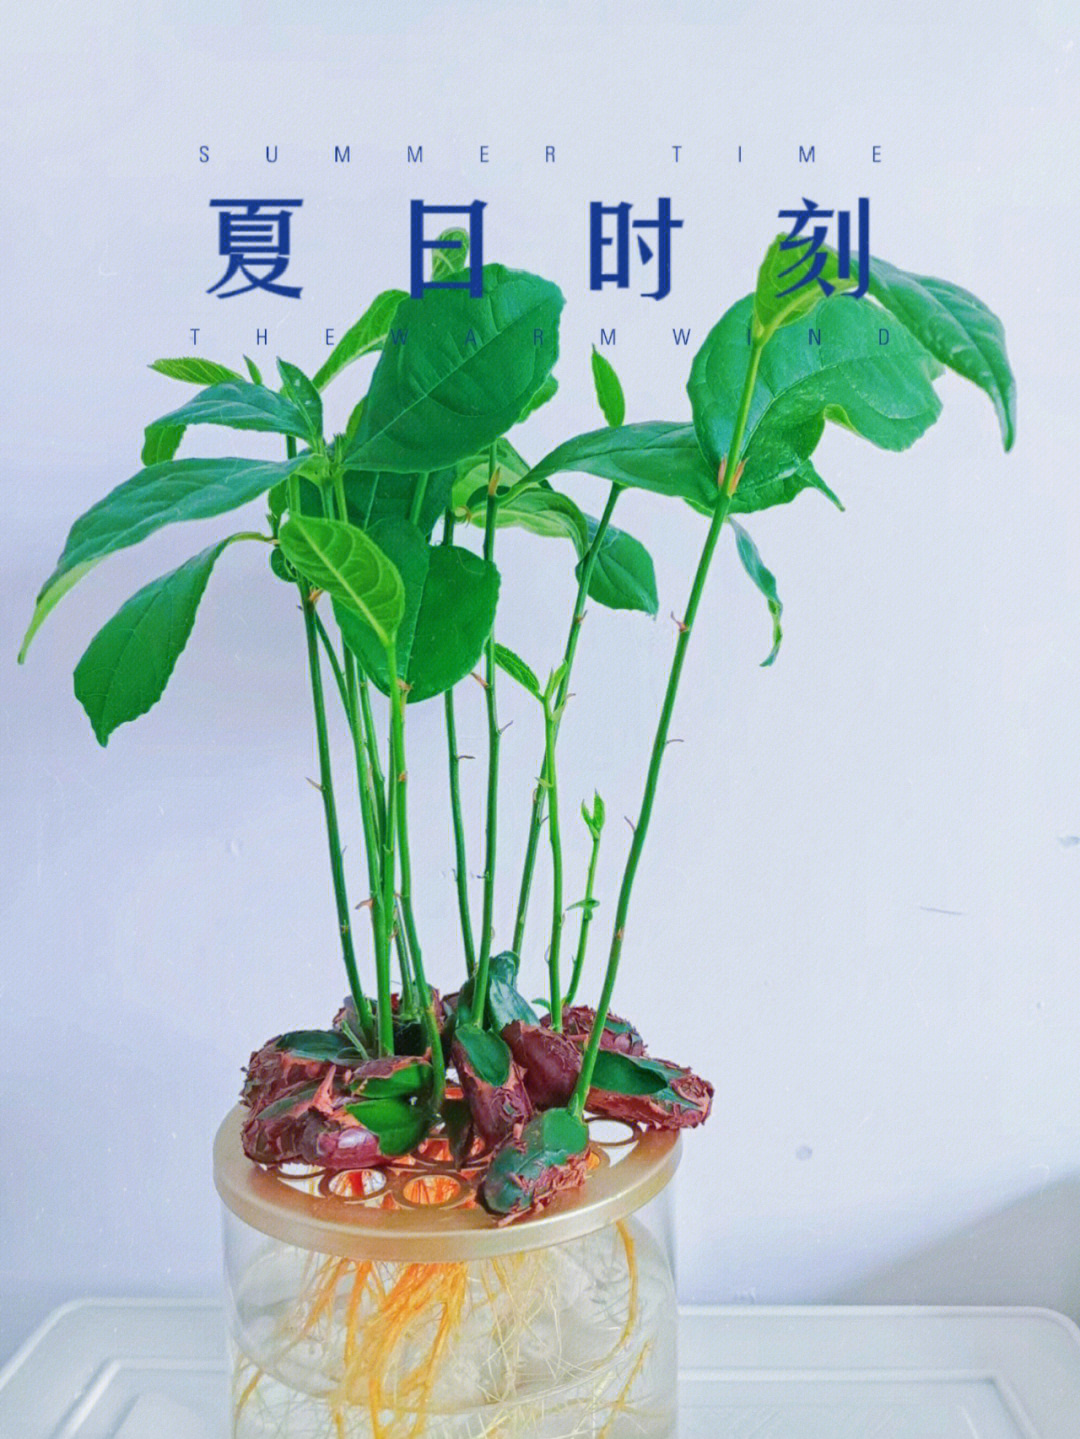 菠萝蜜核 盆栽图片